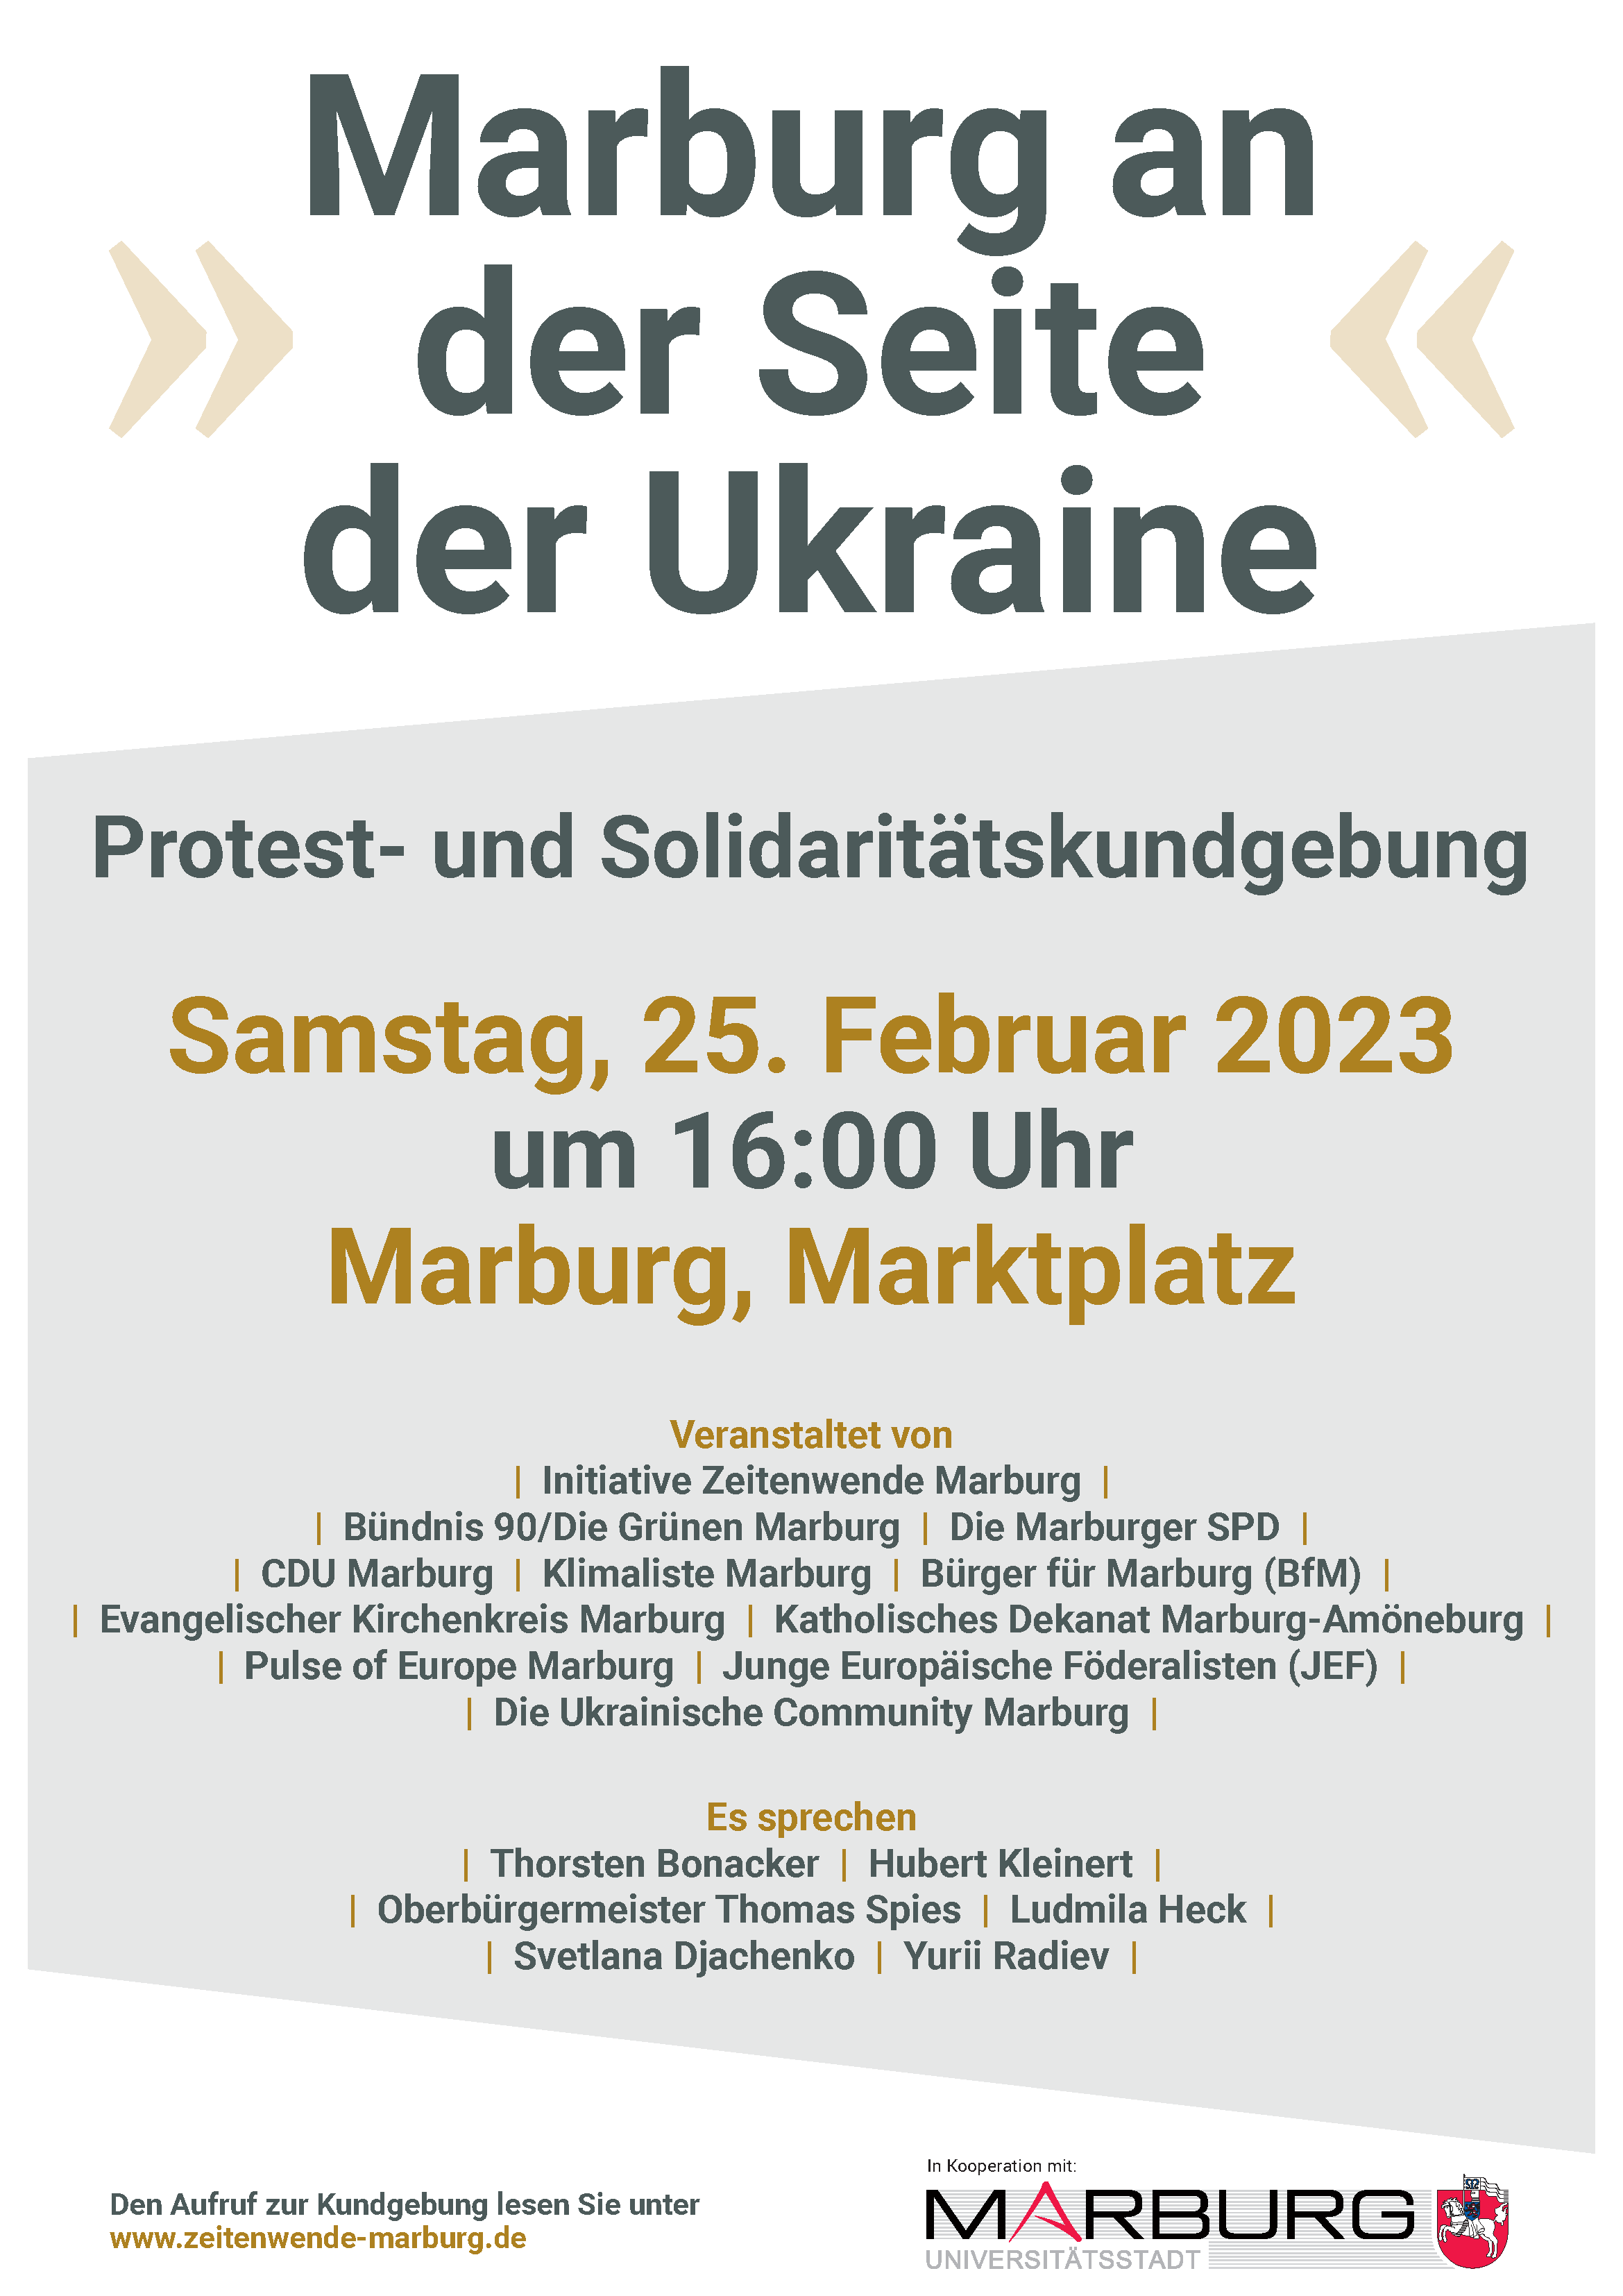 Marburg na straně Ukrajiny - shromáždění 25.02., 16:00 Marktplatz